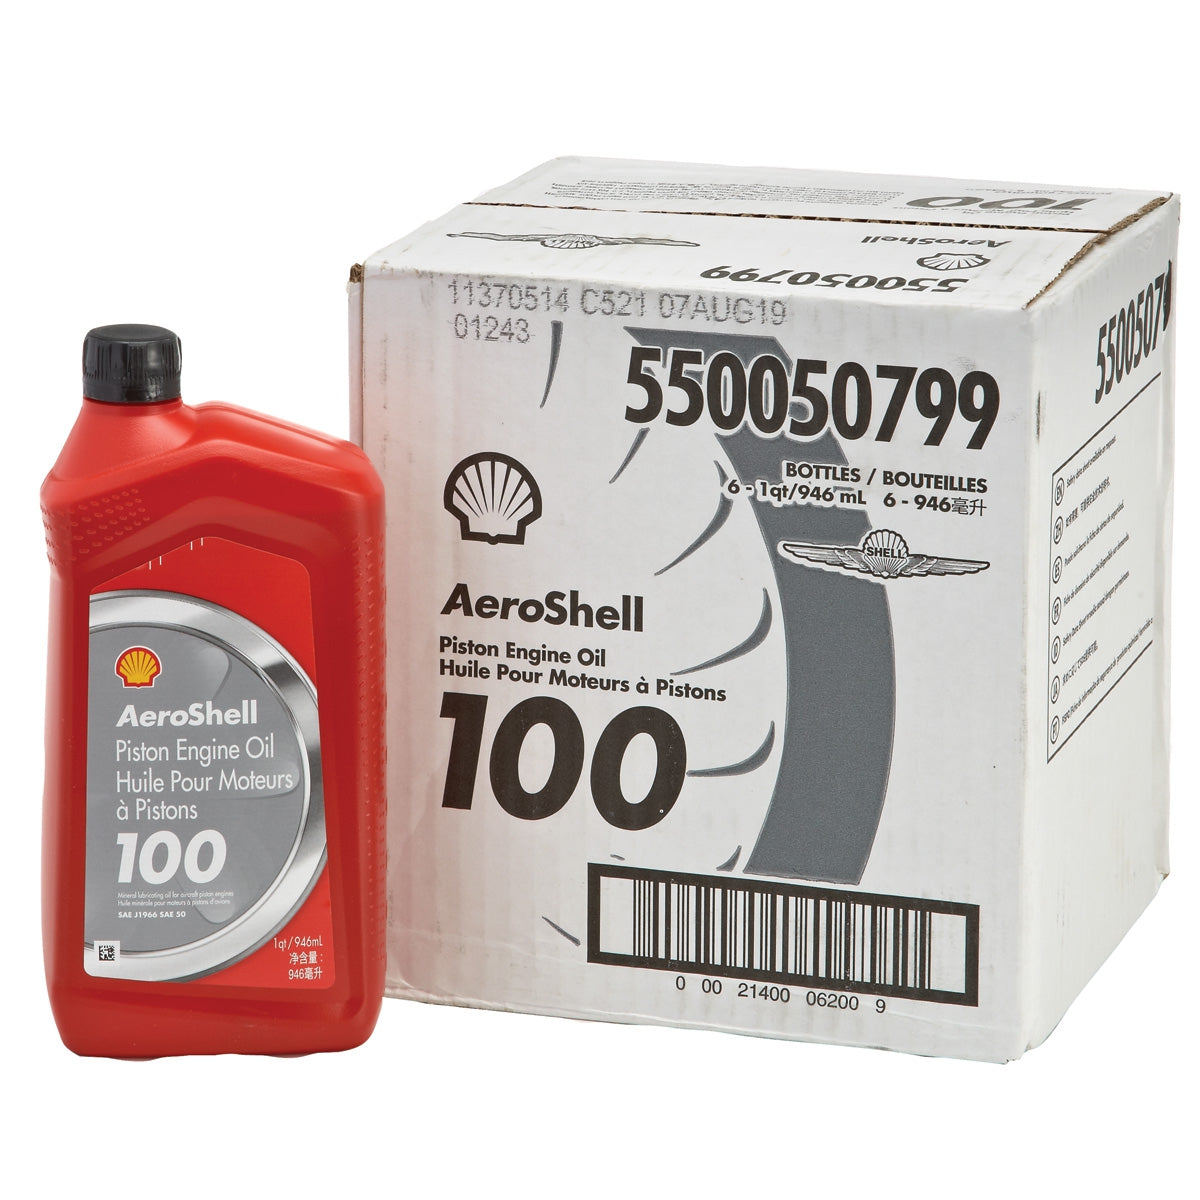 Aeroshell 100 Piston Engine Oil - 6 pack ( Instore Only Does Not Ship)